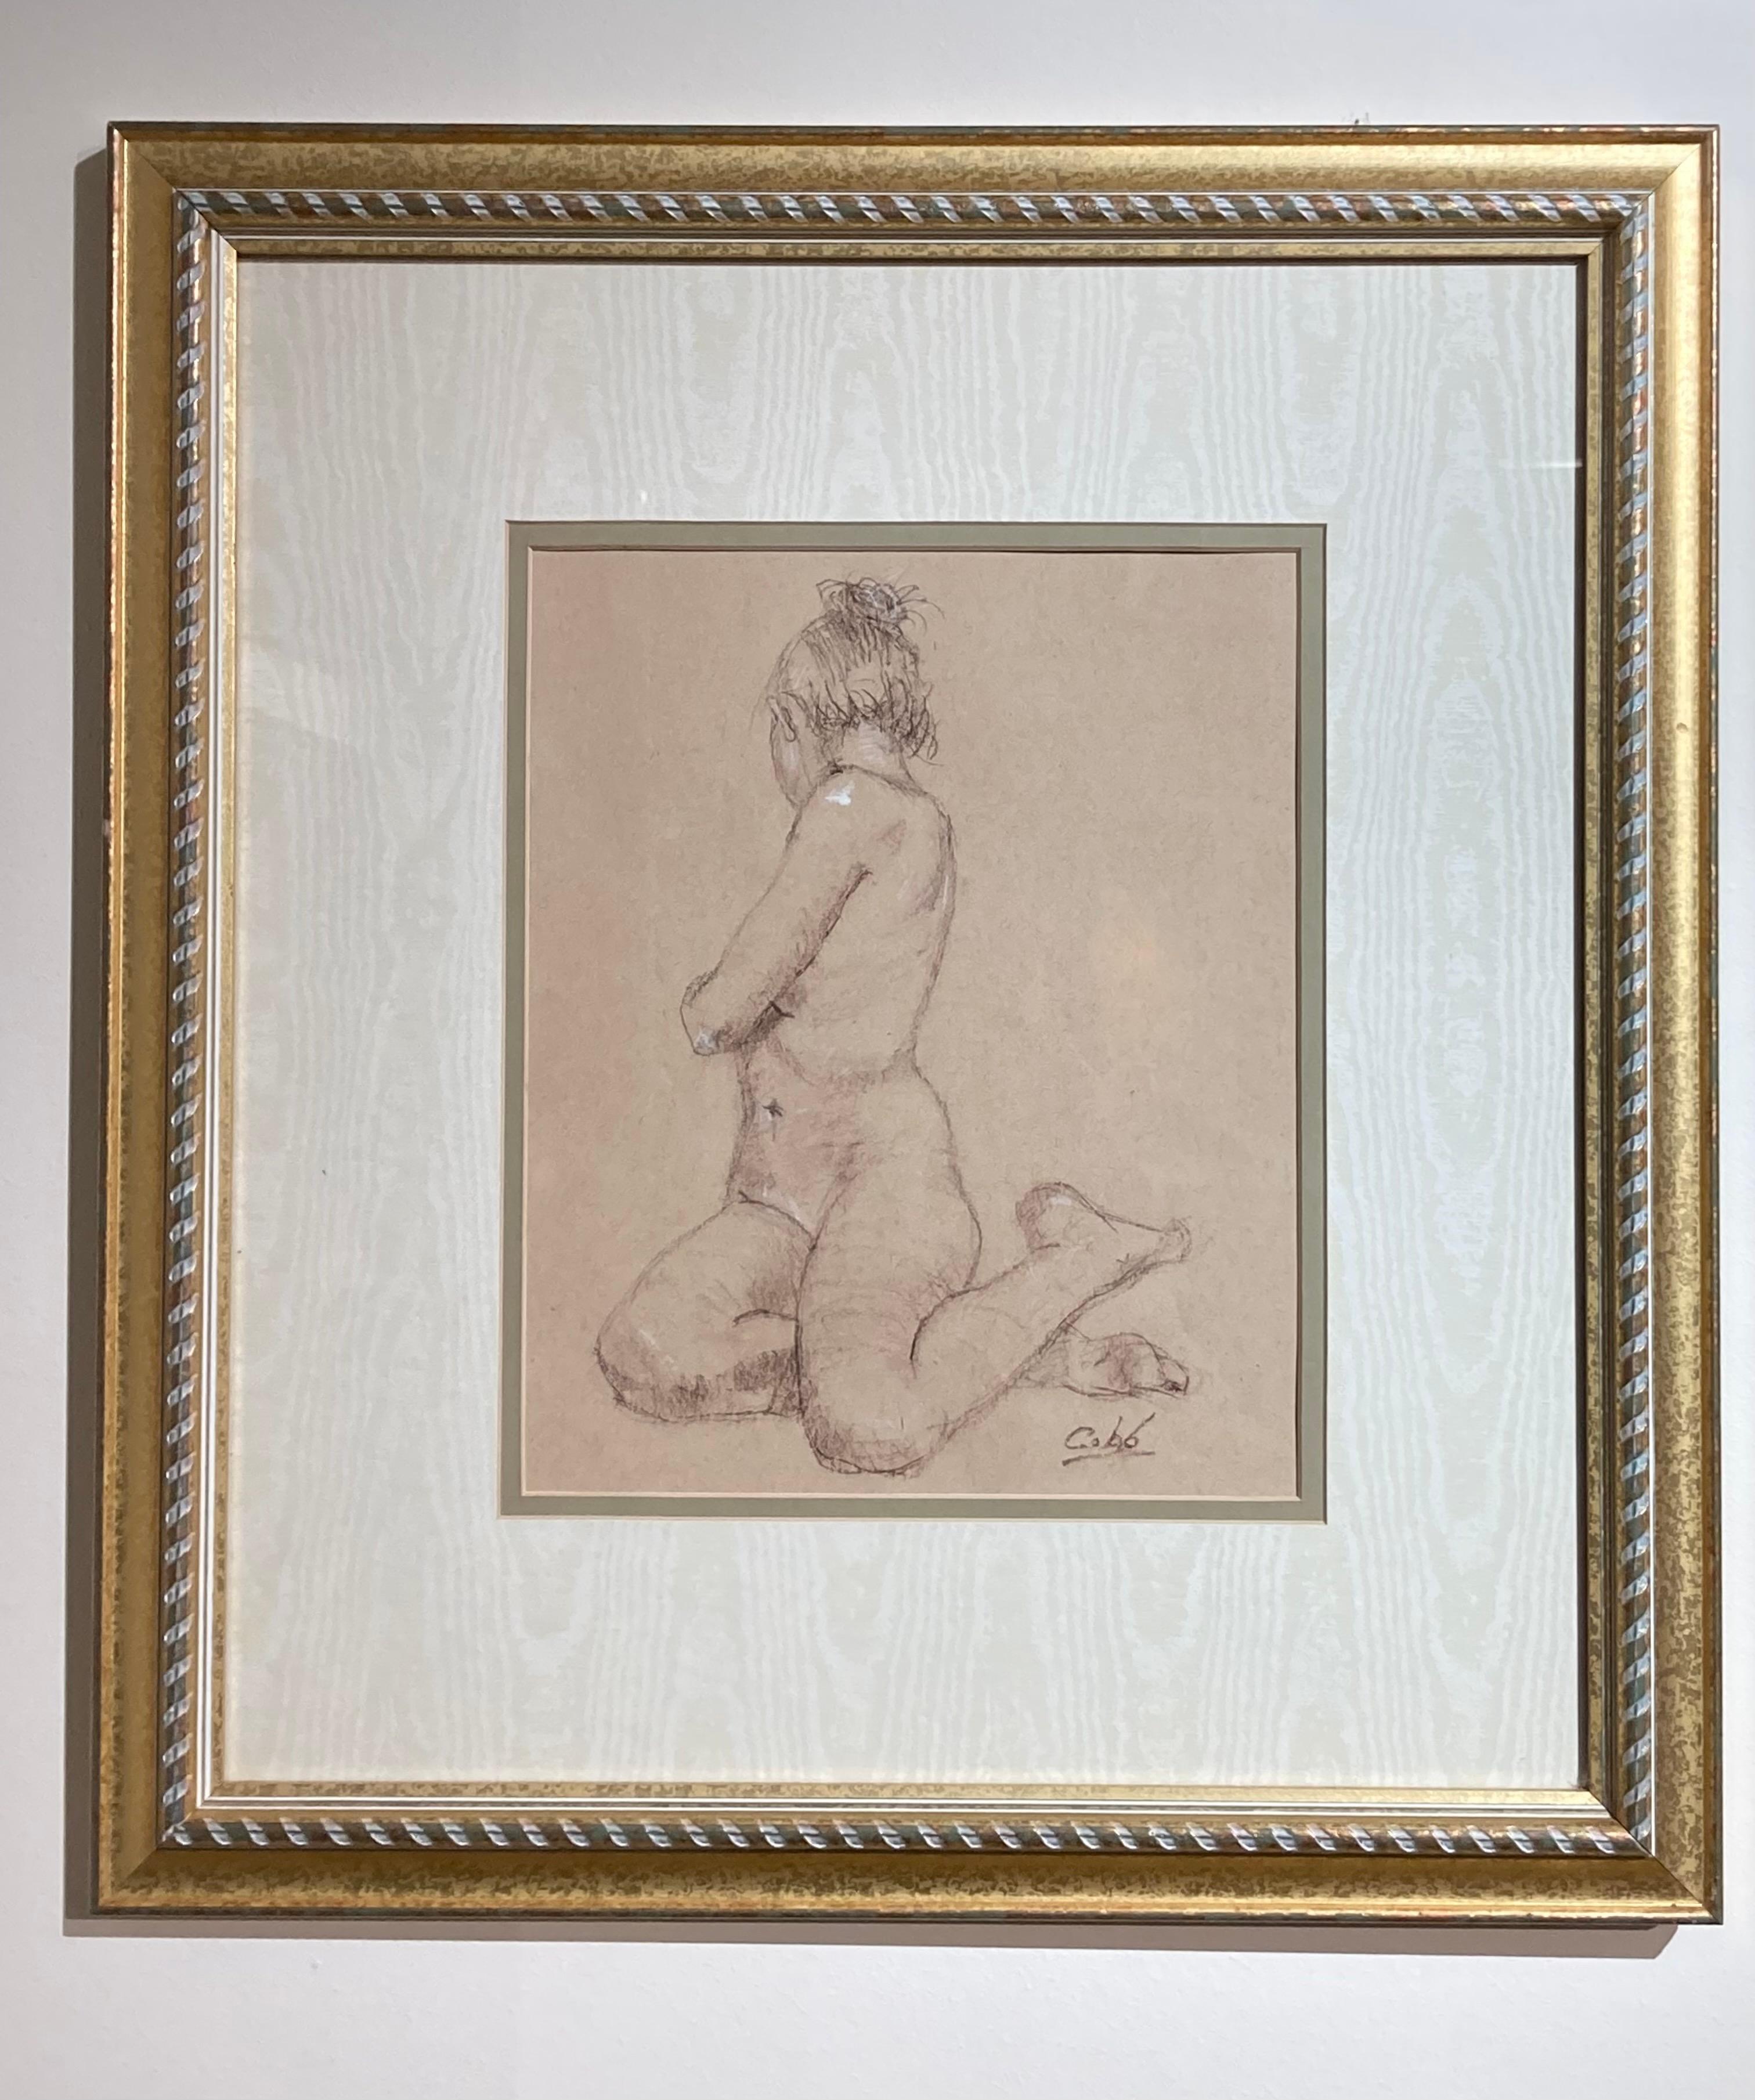 Ce dessin encadré de 21" x 19" de l'artiste James Cobb, "Erika in Gesture I", représente le modèle féminin dans une pose assise. Le modèle est assis, les jambes repliées sous le bas du corps, la taille se tordant derrière. Le haut de son corps, ses